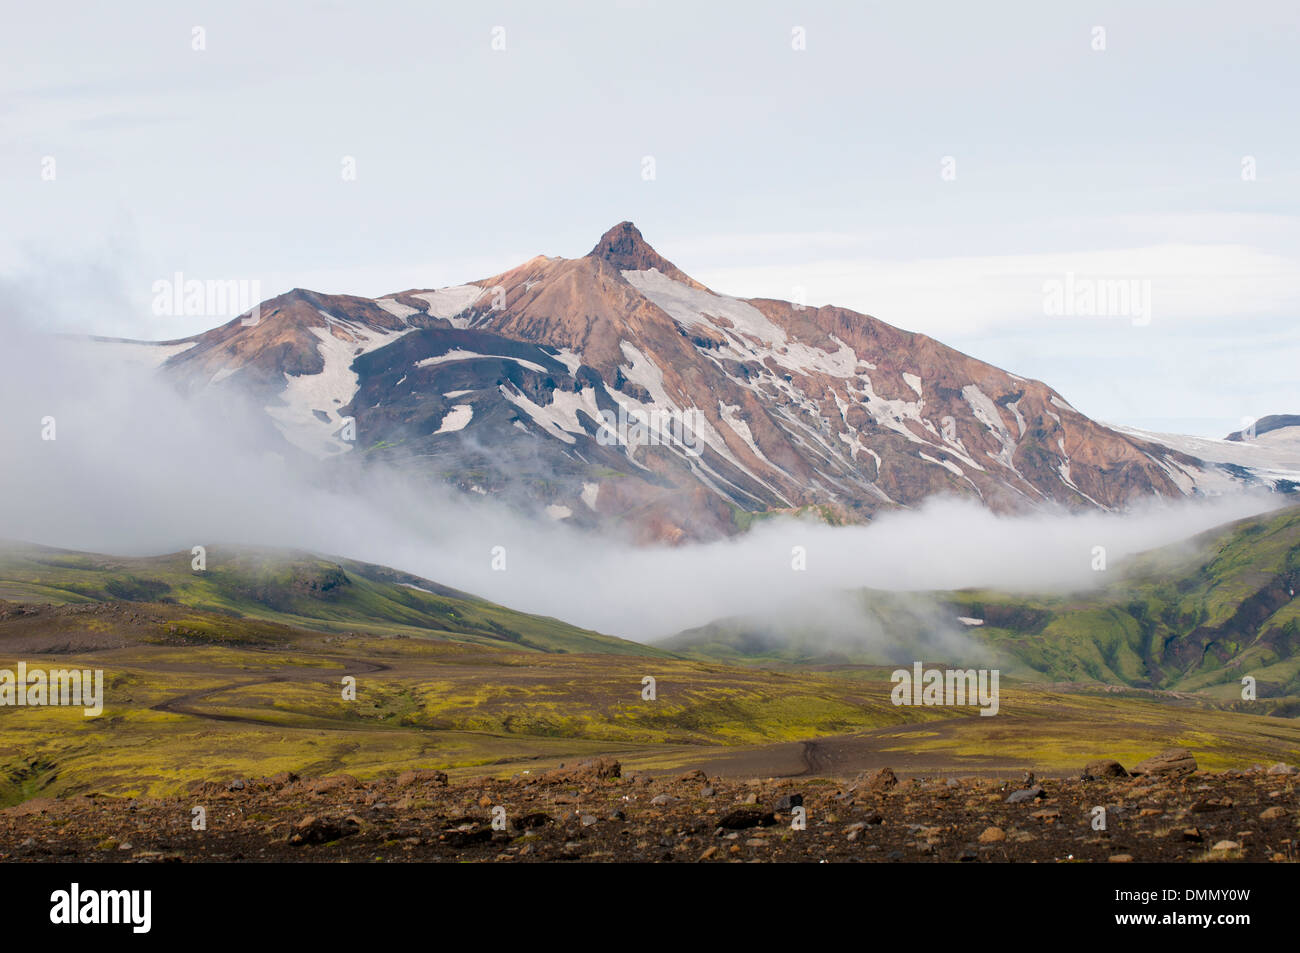 La montagne est entourée de nuages, Landmannalaugar, Islande Banque D'Images